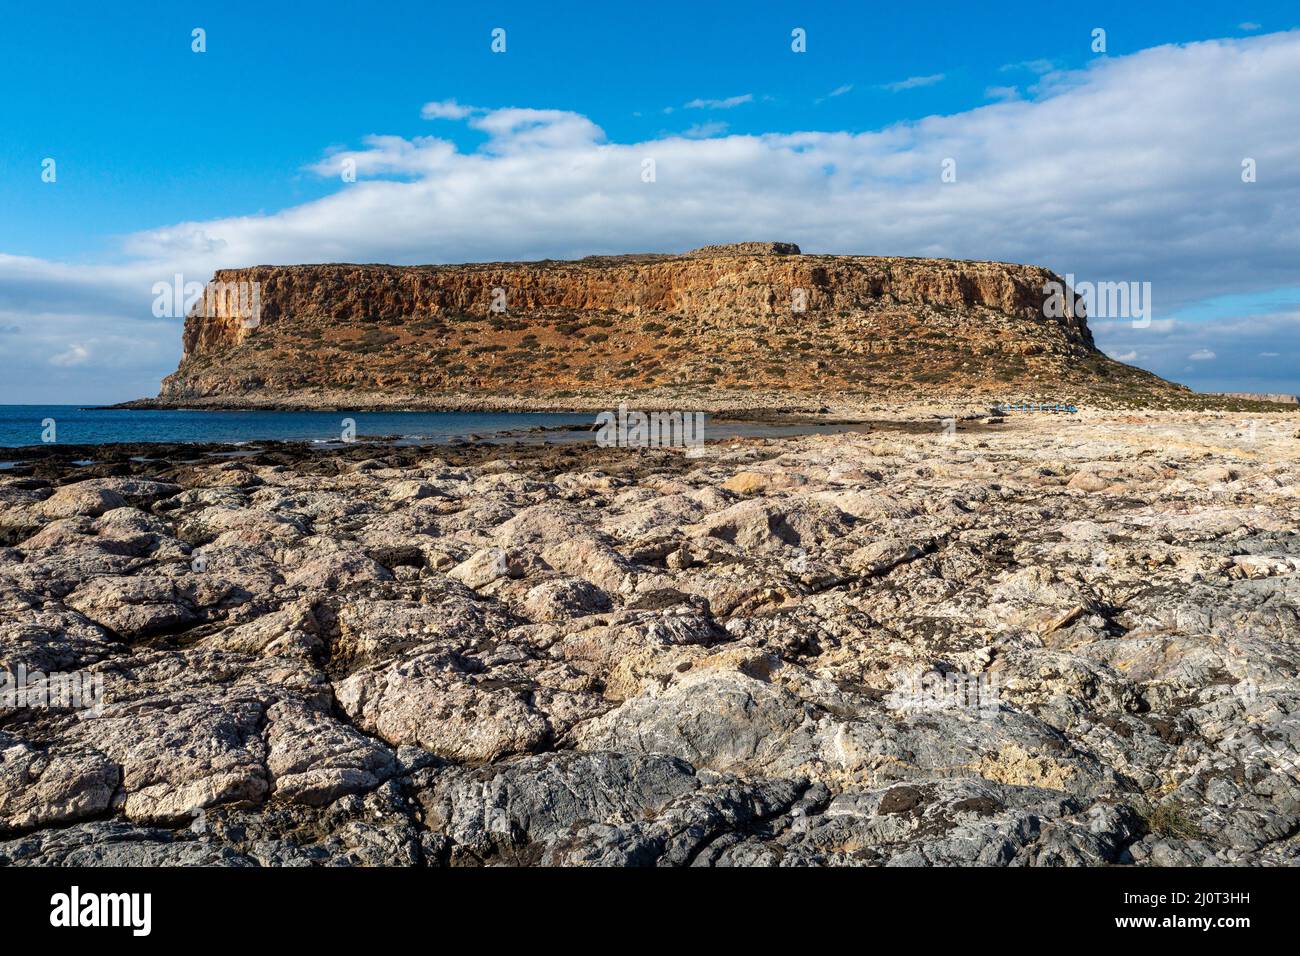 Plage de Balos, l'une des plus belles et uniques plages de Crète, Grèce Banque D'Images